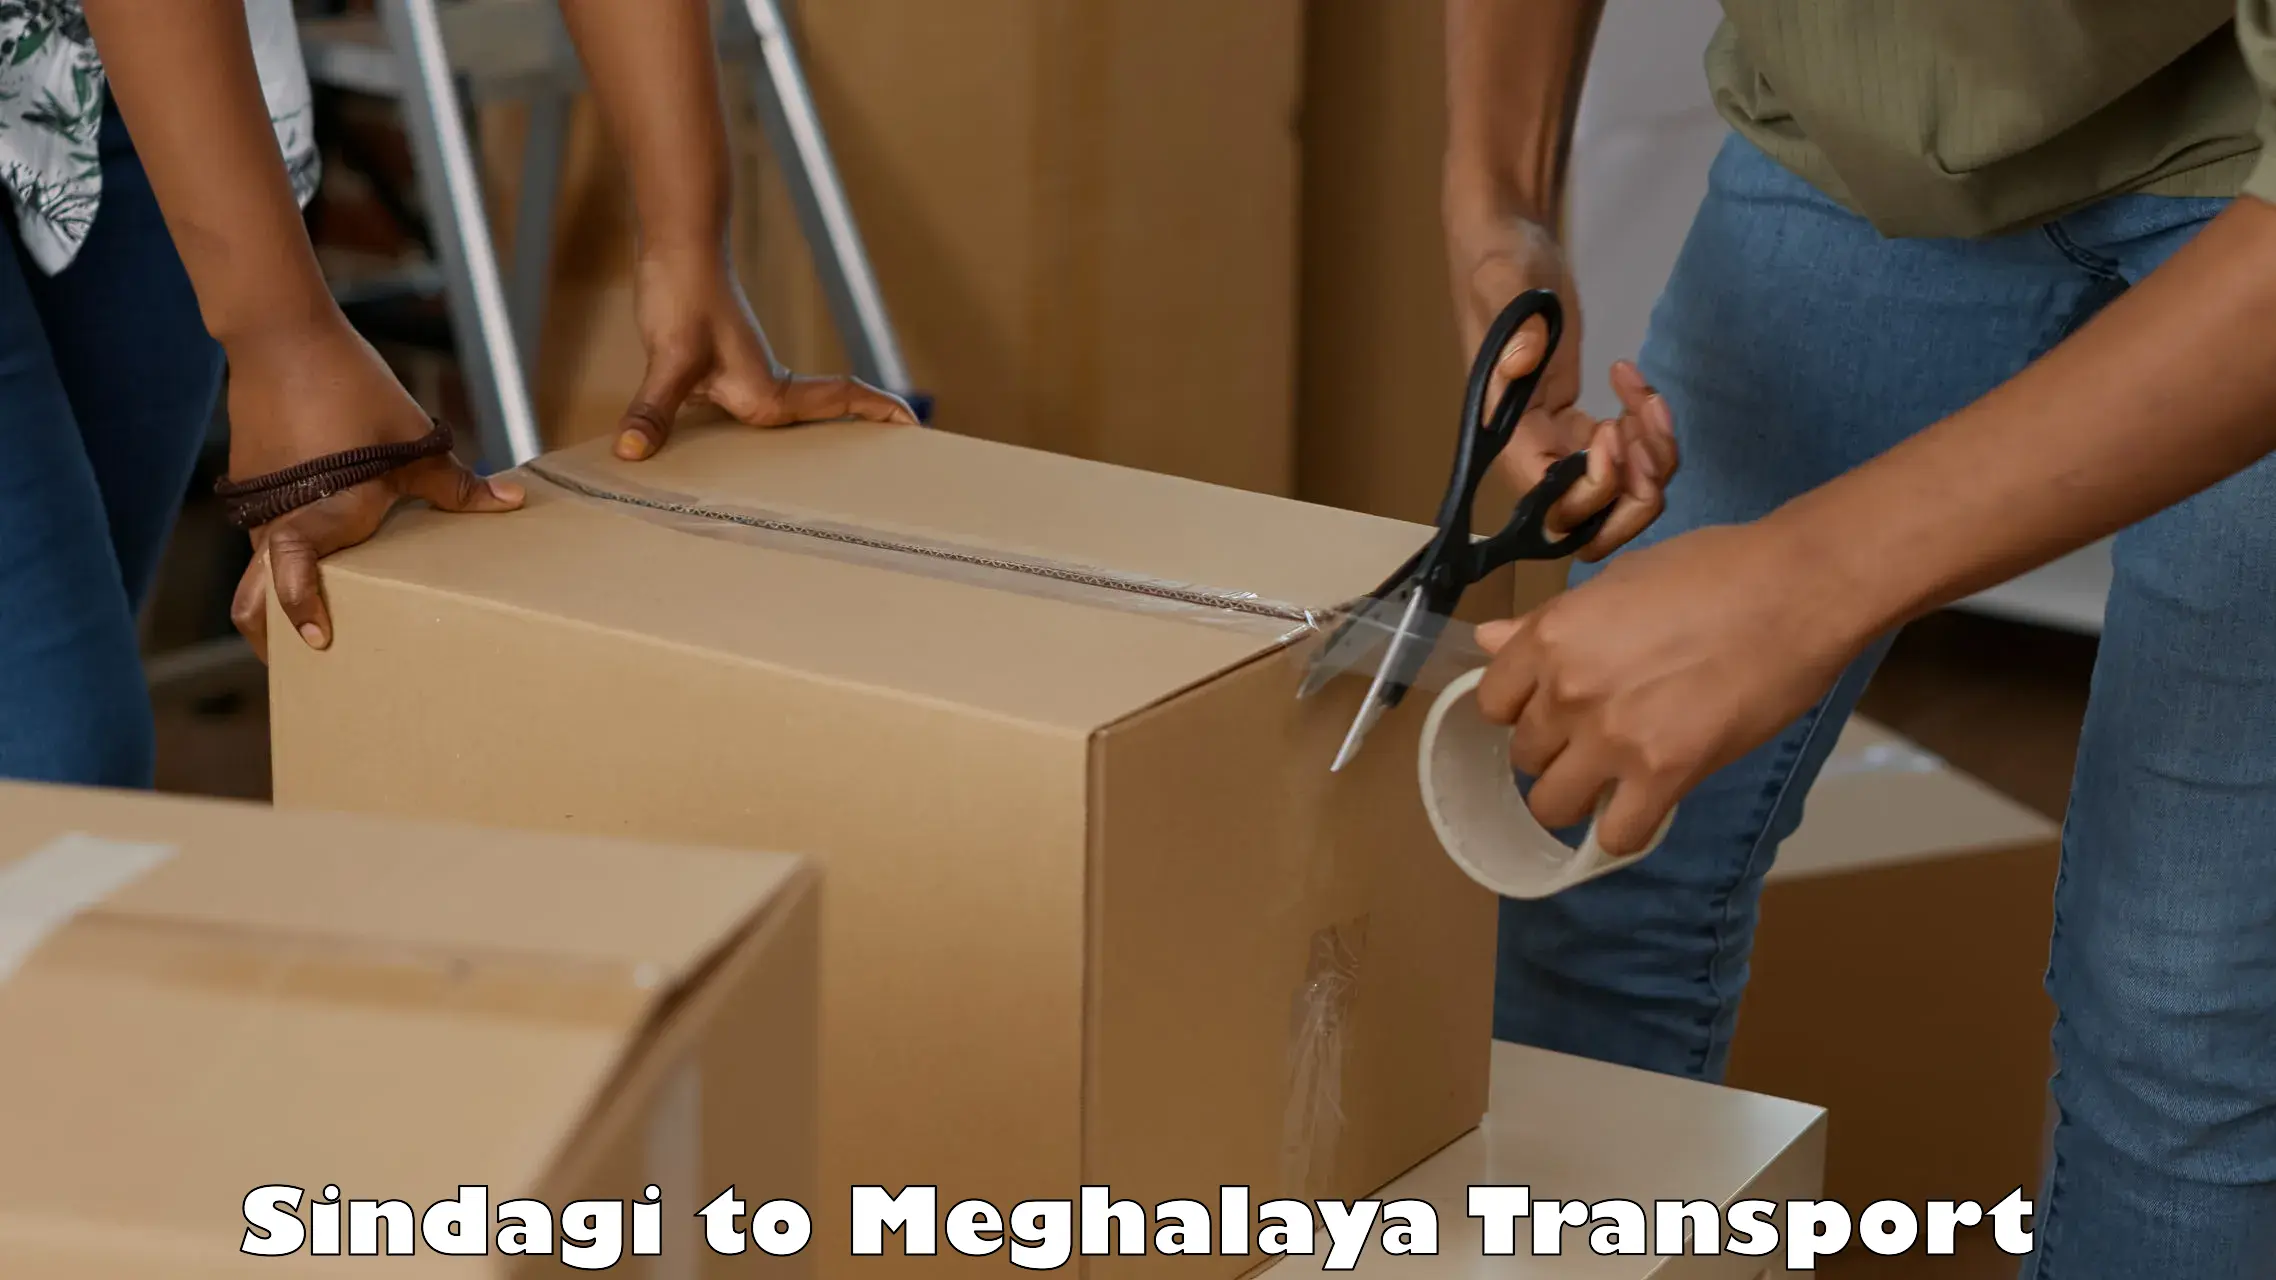 Sending bike to another city Sindagi to Meghalaya